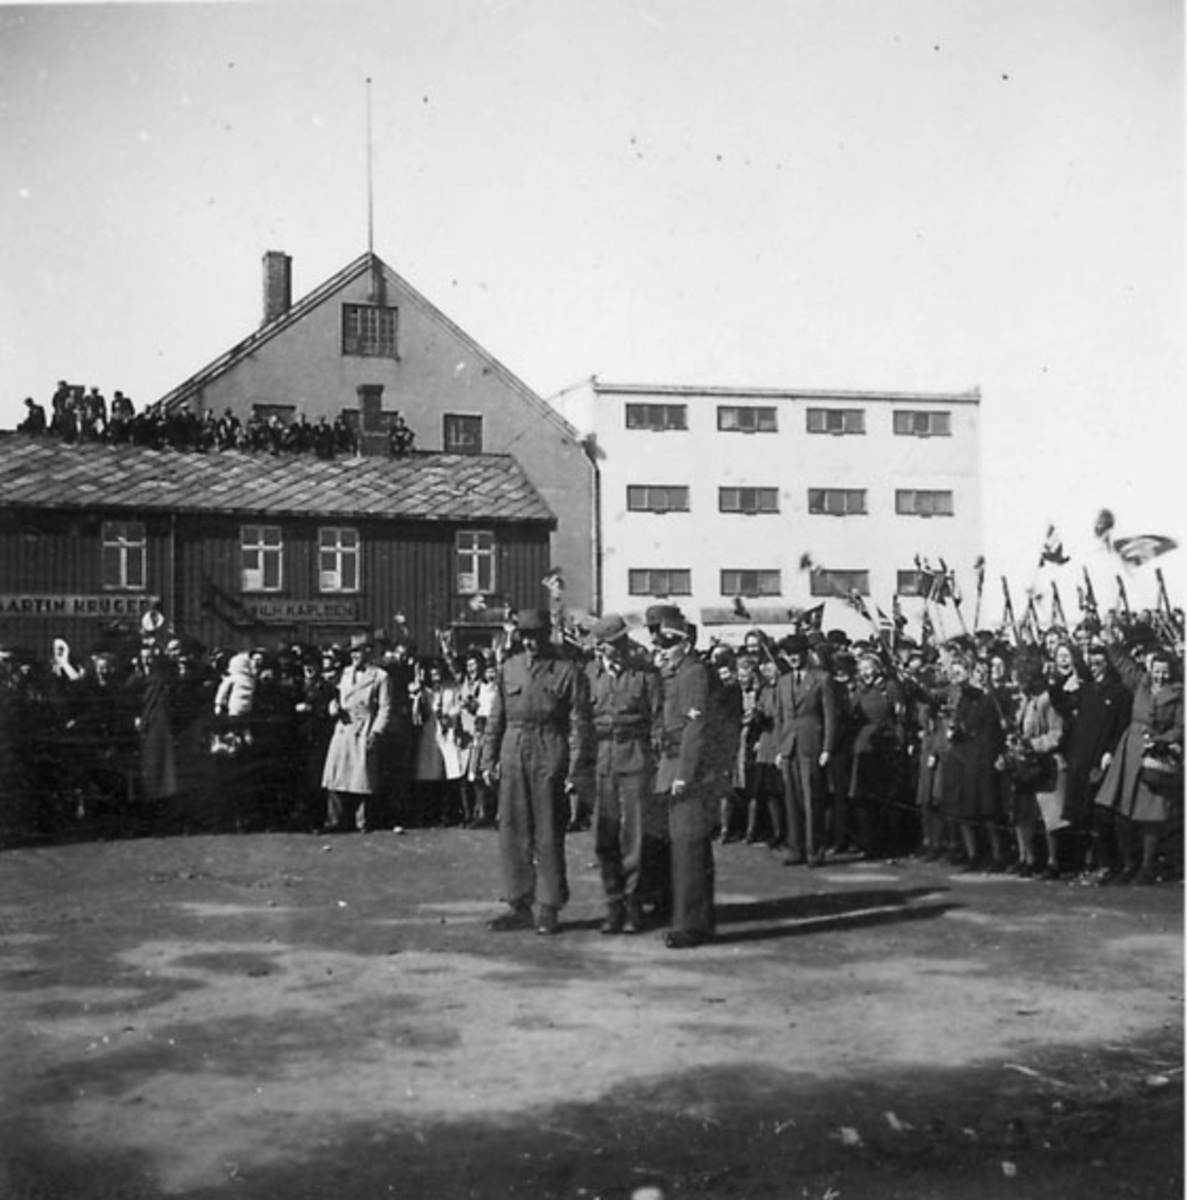 Frigjøringsdagene i Bodø etter krigen 1940 - 1945. Flere soldater og sivile. Flere bygninger, bl.a. med påskrift "MARTIN KRUGER" og "WILH. KARLSEN"